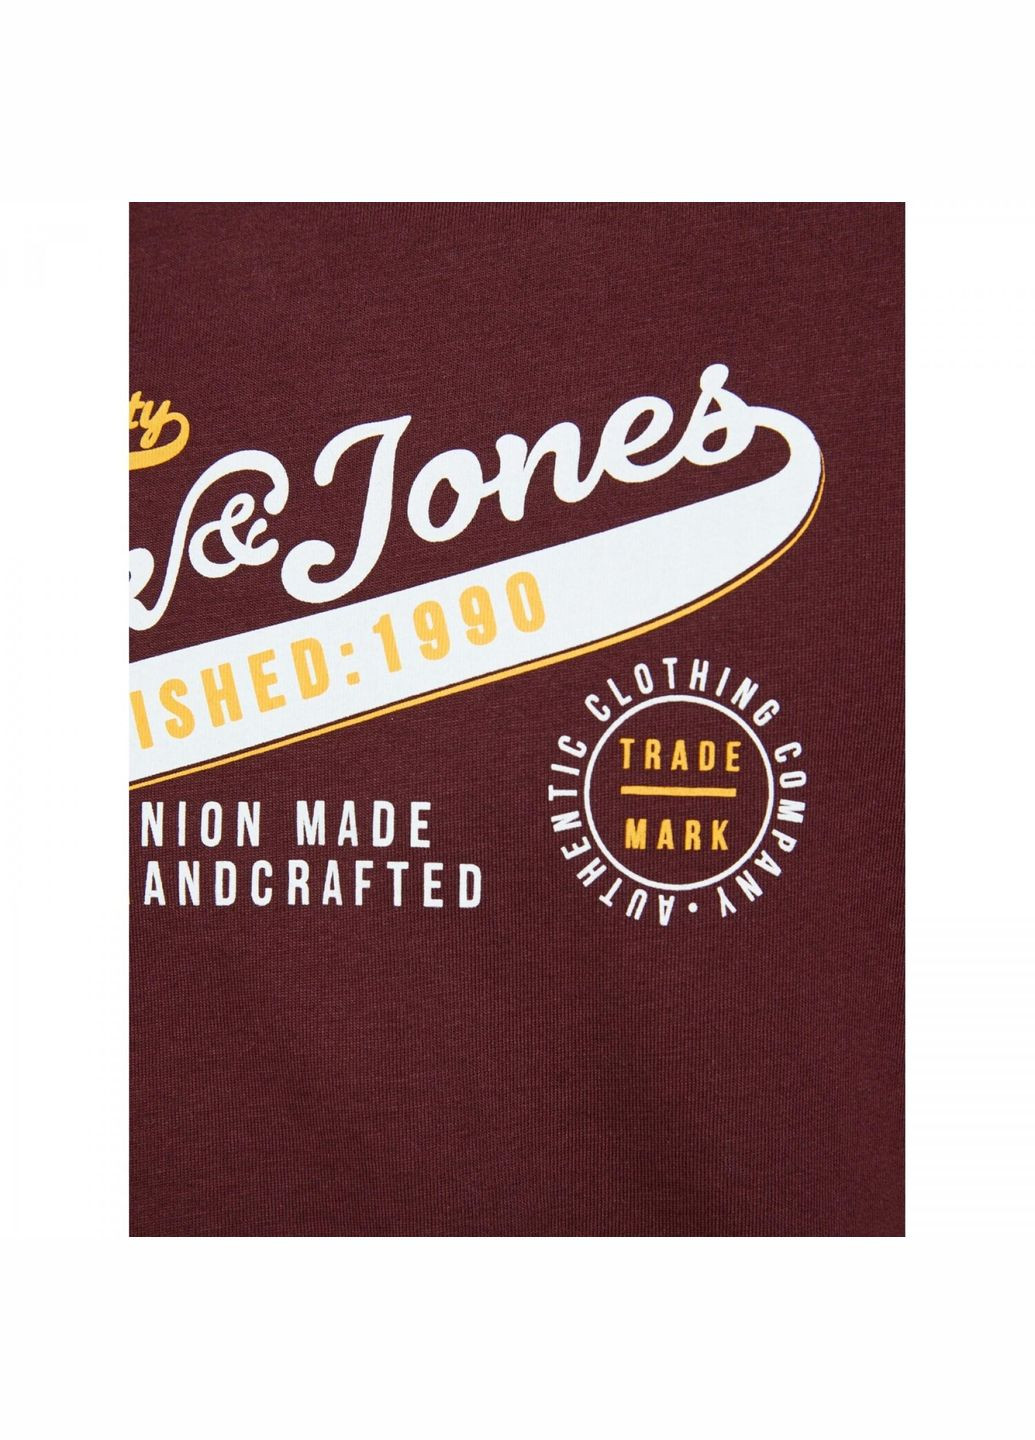 Бордовая демисезонная футболка для парня 12173882 бордовая с белой надписью (164 см) Jack & Jones